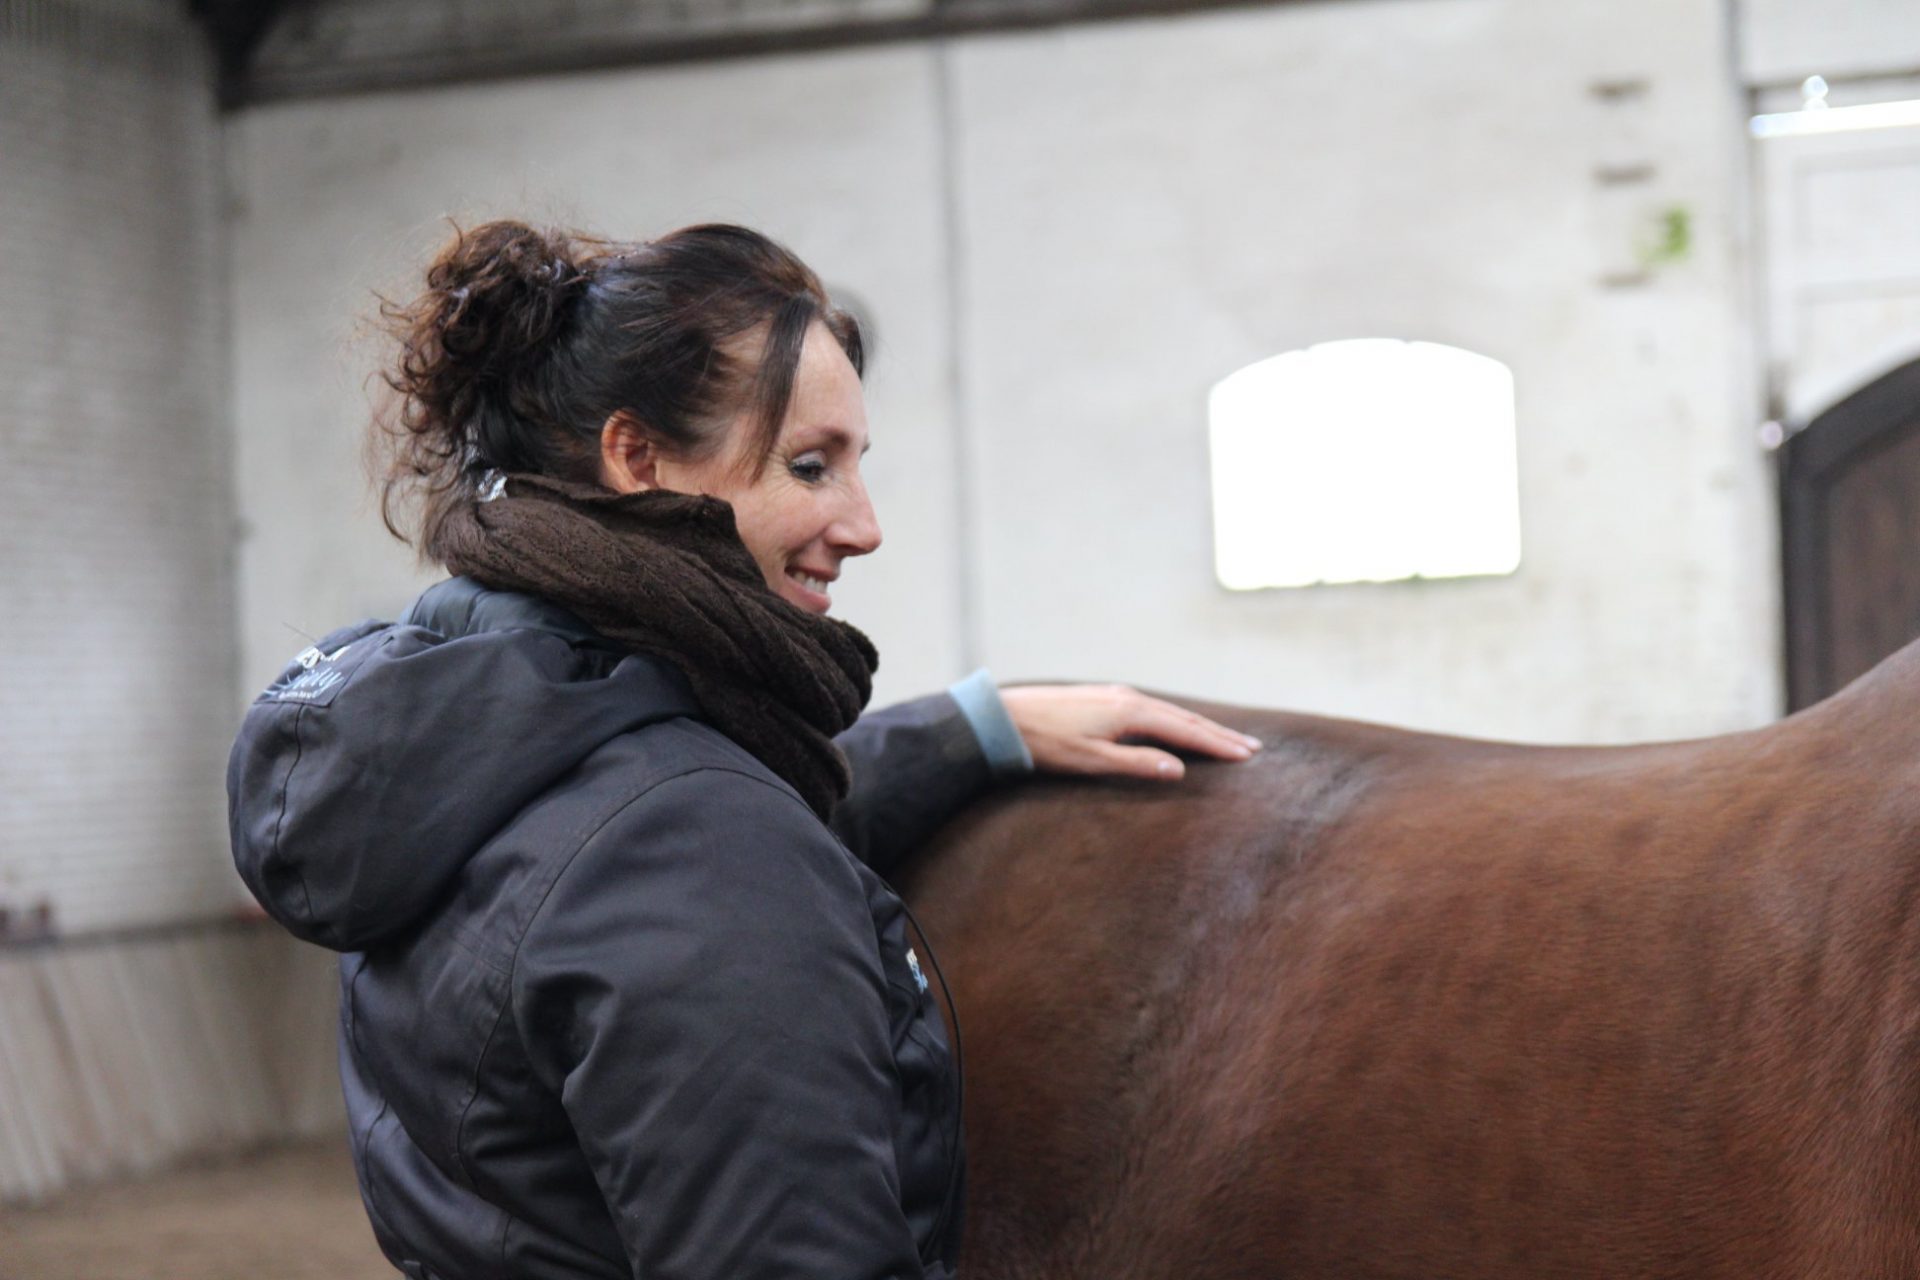 Cursus Energetische Paardenmassage bij The Old Horses Lodge in Laarne (B) op zaterdag 25 en zondag 26 juni 2022